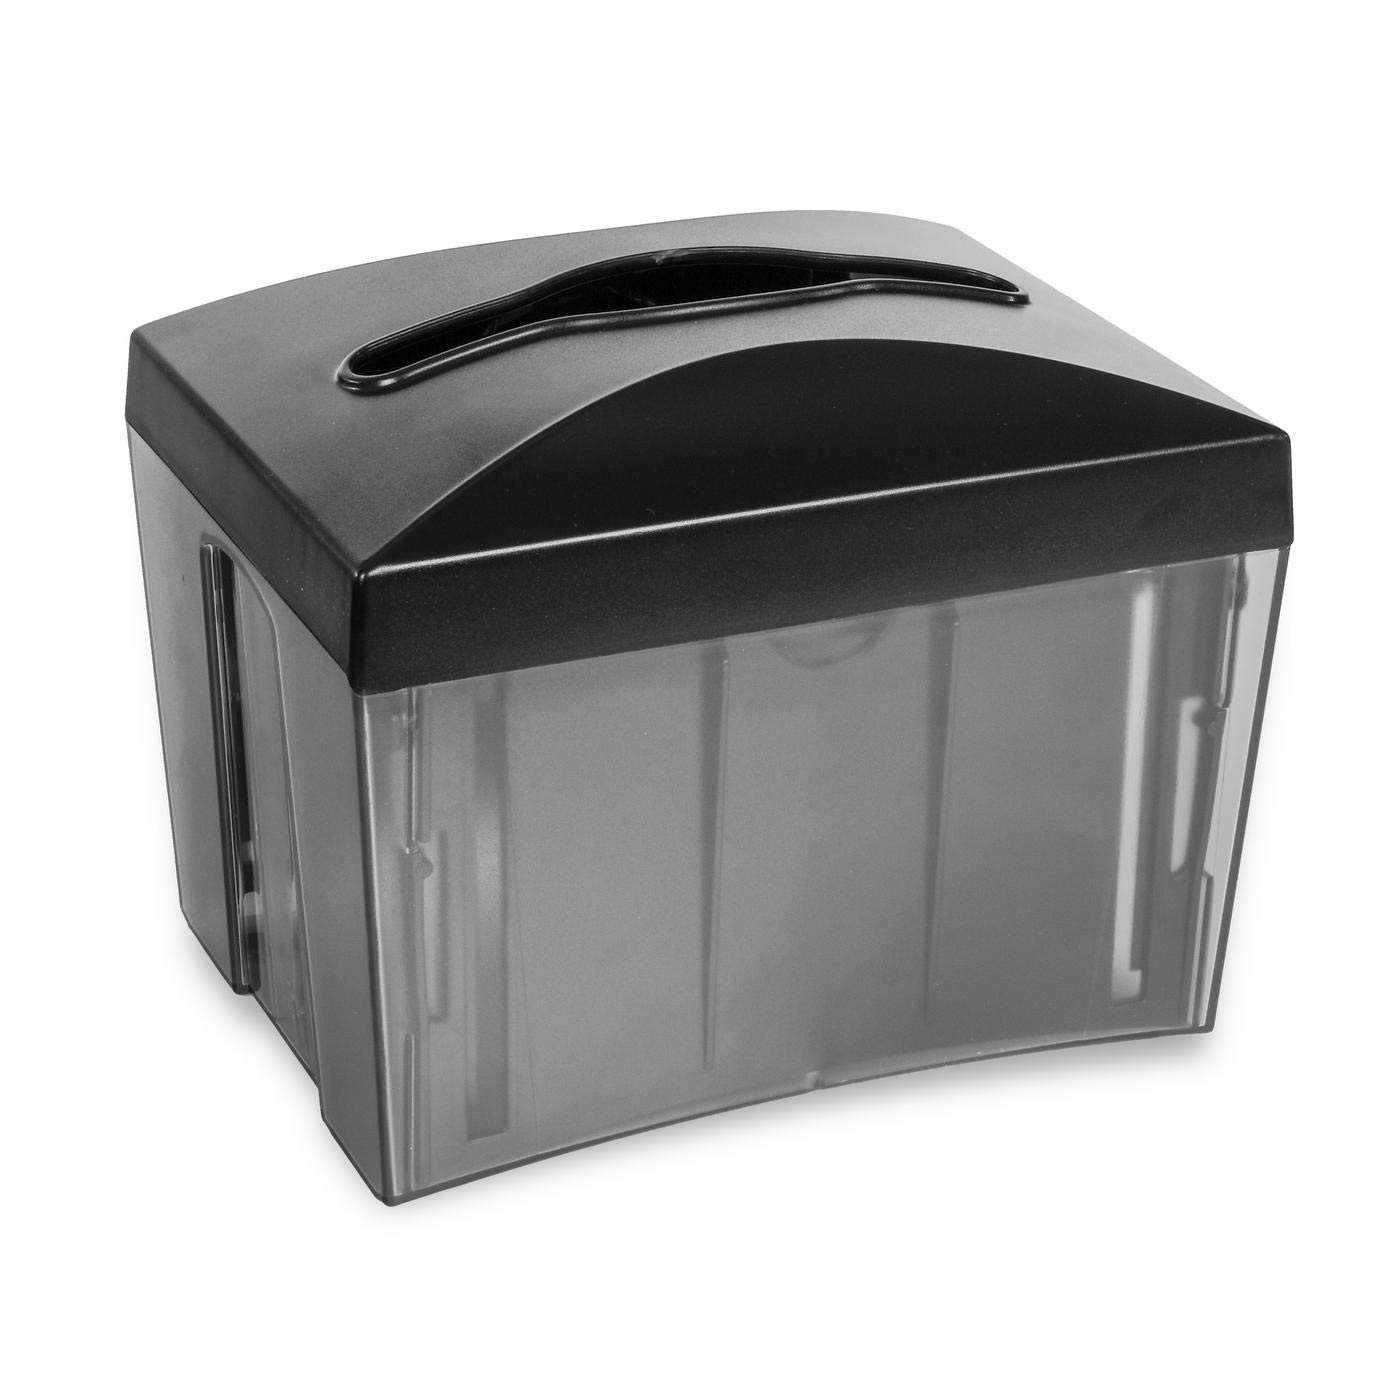 Quicky Tischspender für interfold Spenderservietten, schwarz transparent, 1er Pack (1 x 1 Stück)